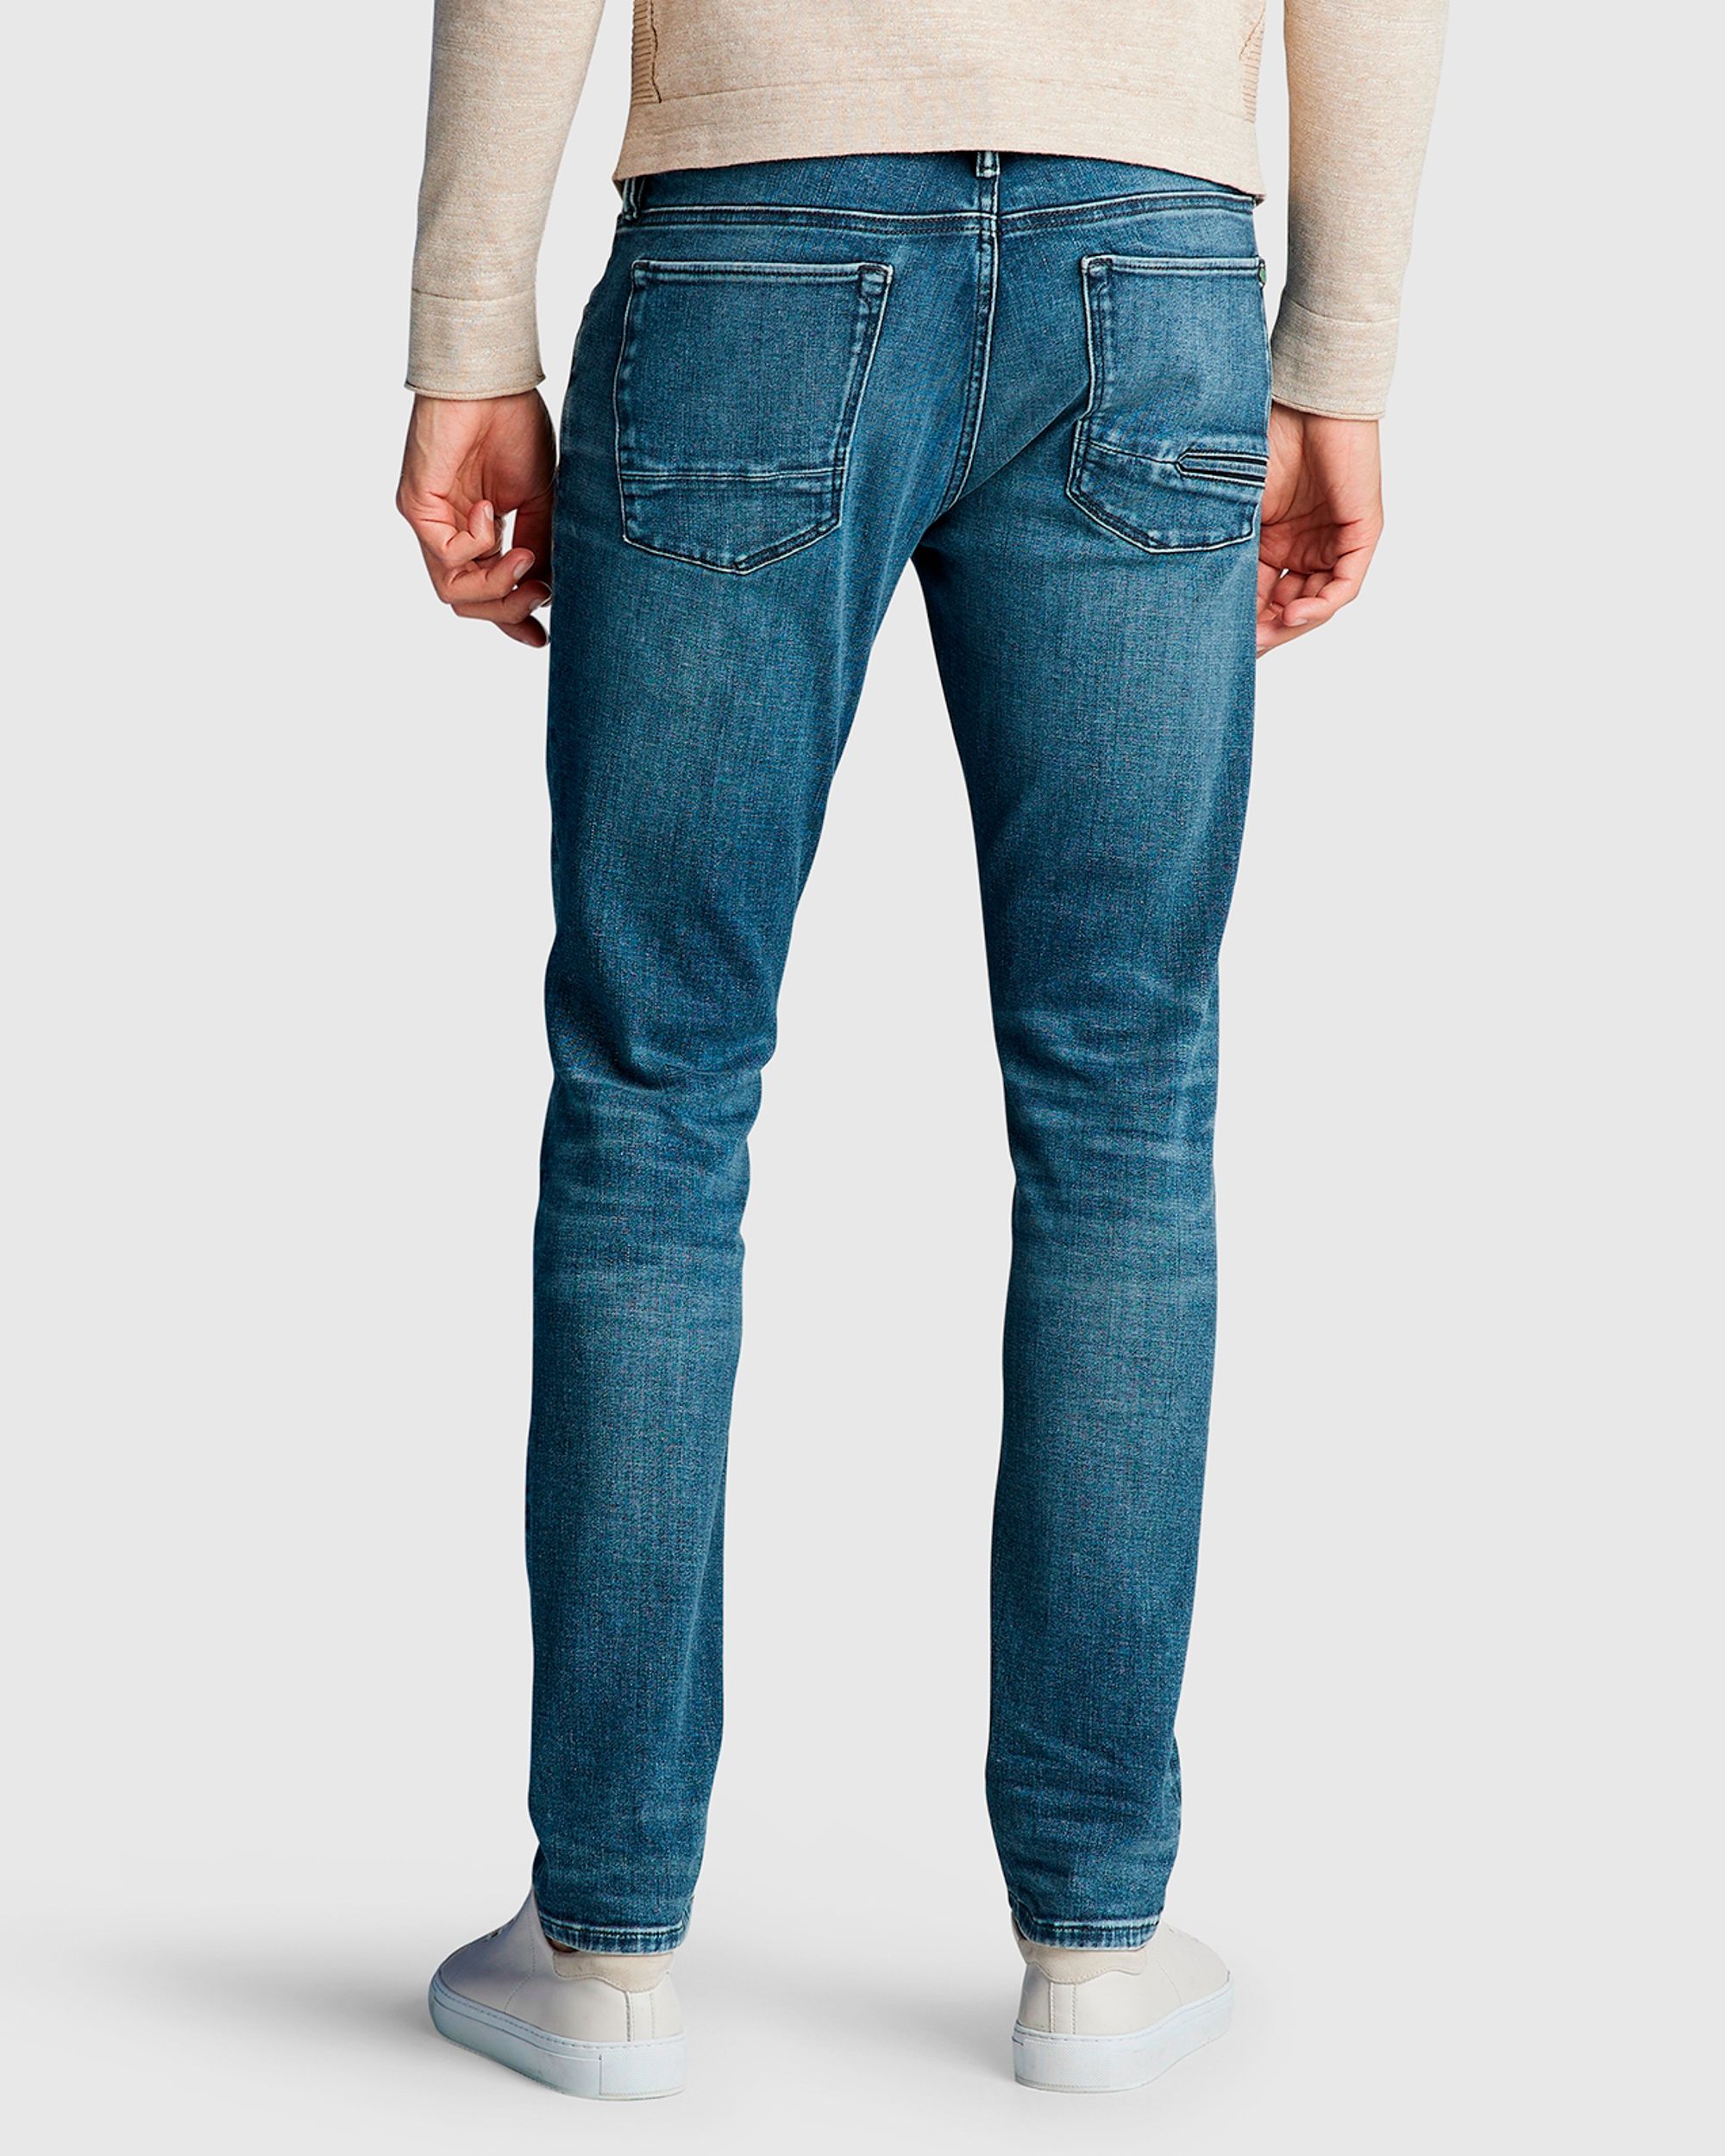 Cast Iron Riser Slim Fit Jeans | Shop nu - OFM.